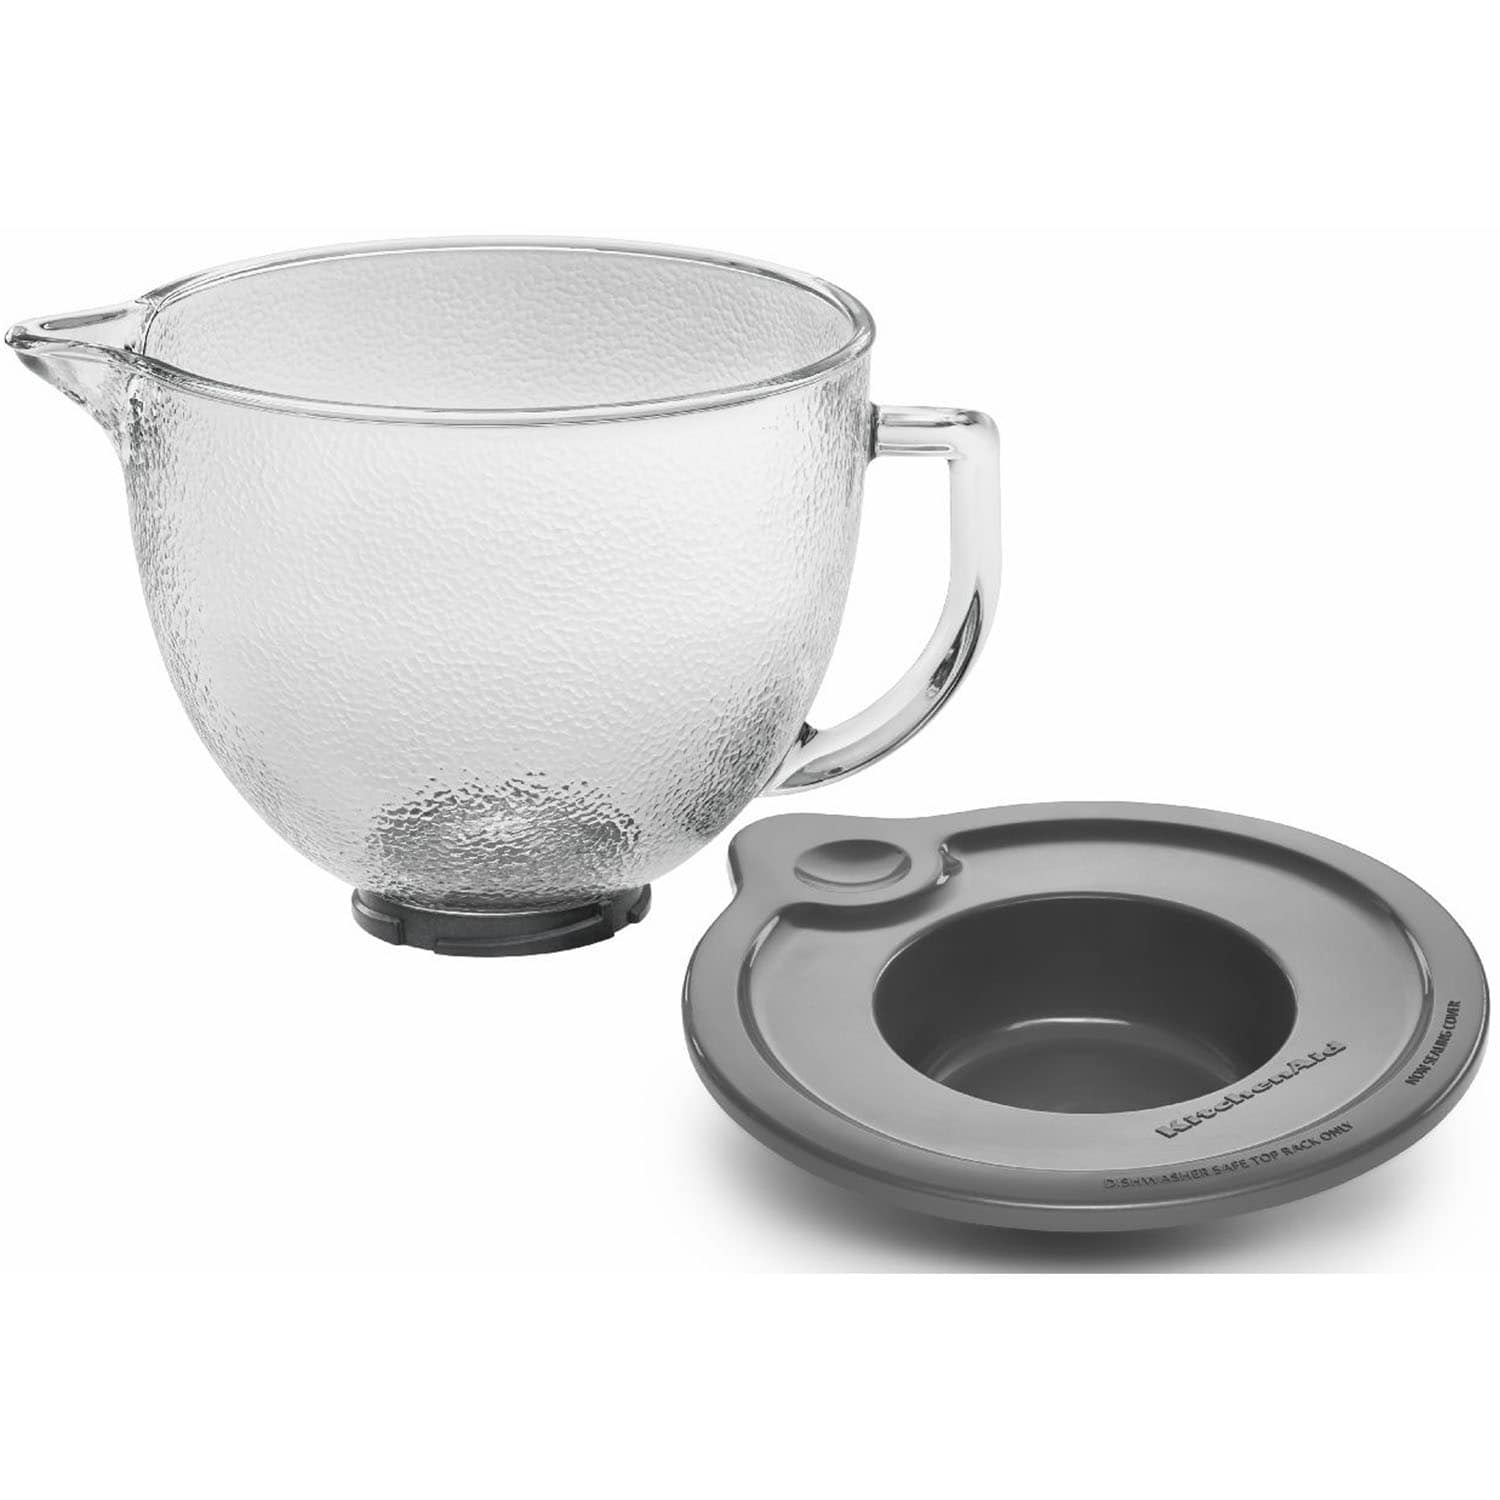 KitchenAid Stand Mixer Glass Bowl at